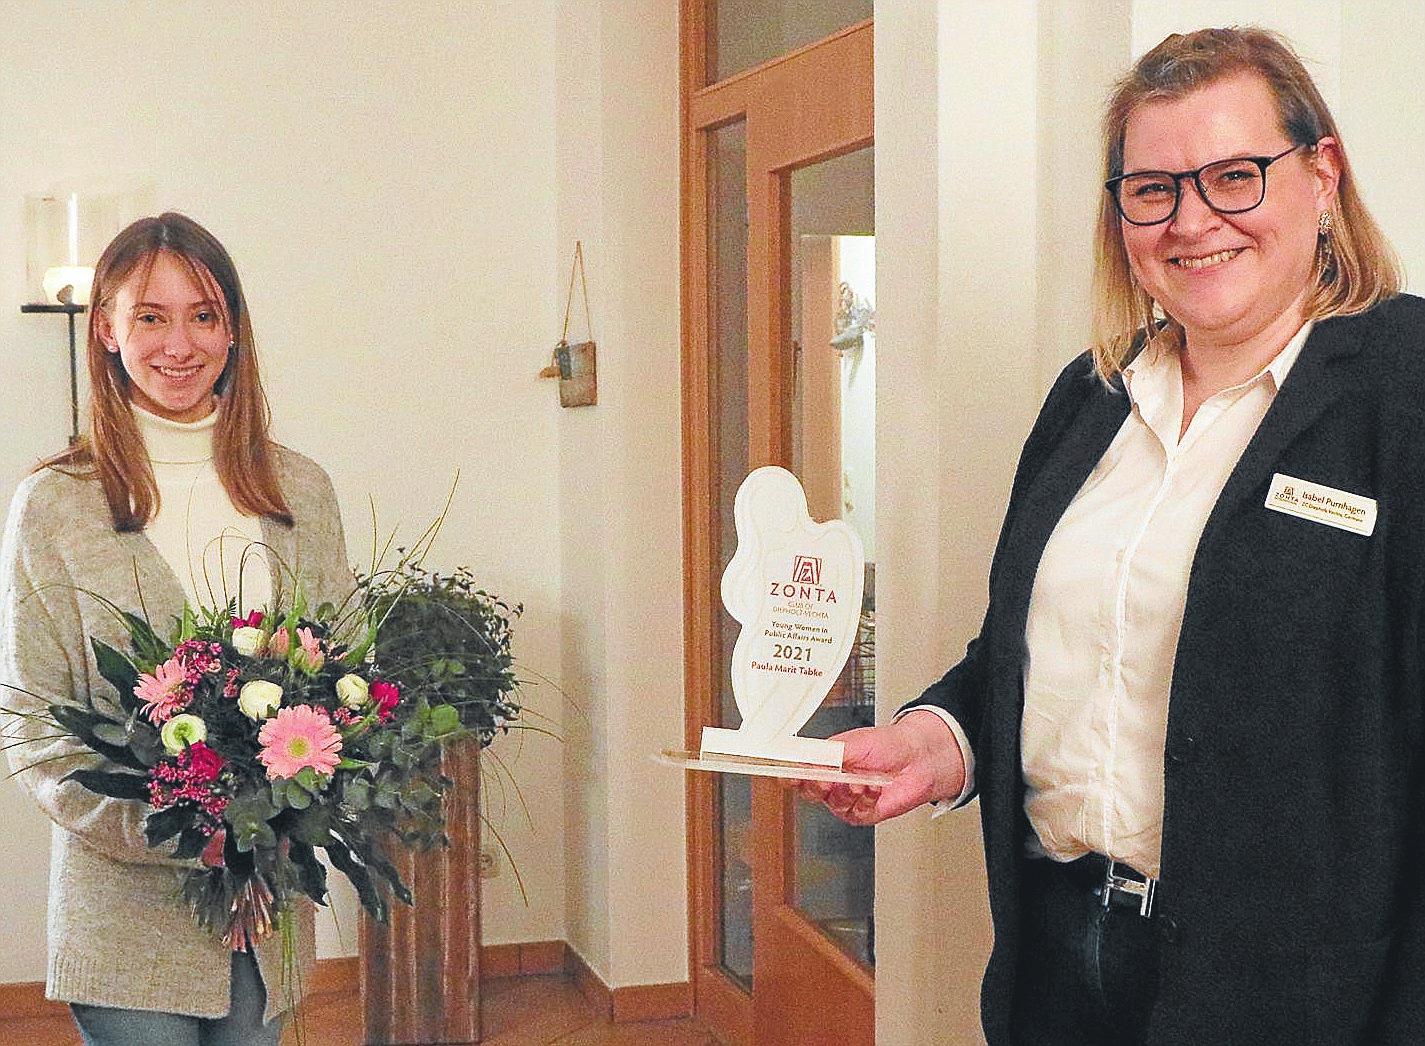 Preisverleihung: Isabel Purnhagen übergibt die Trophäe an Paula Tabke, die in den Diepholzer Stadtrat gewählt wurde.